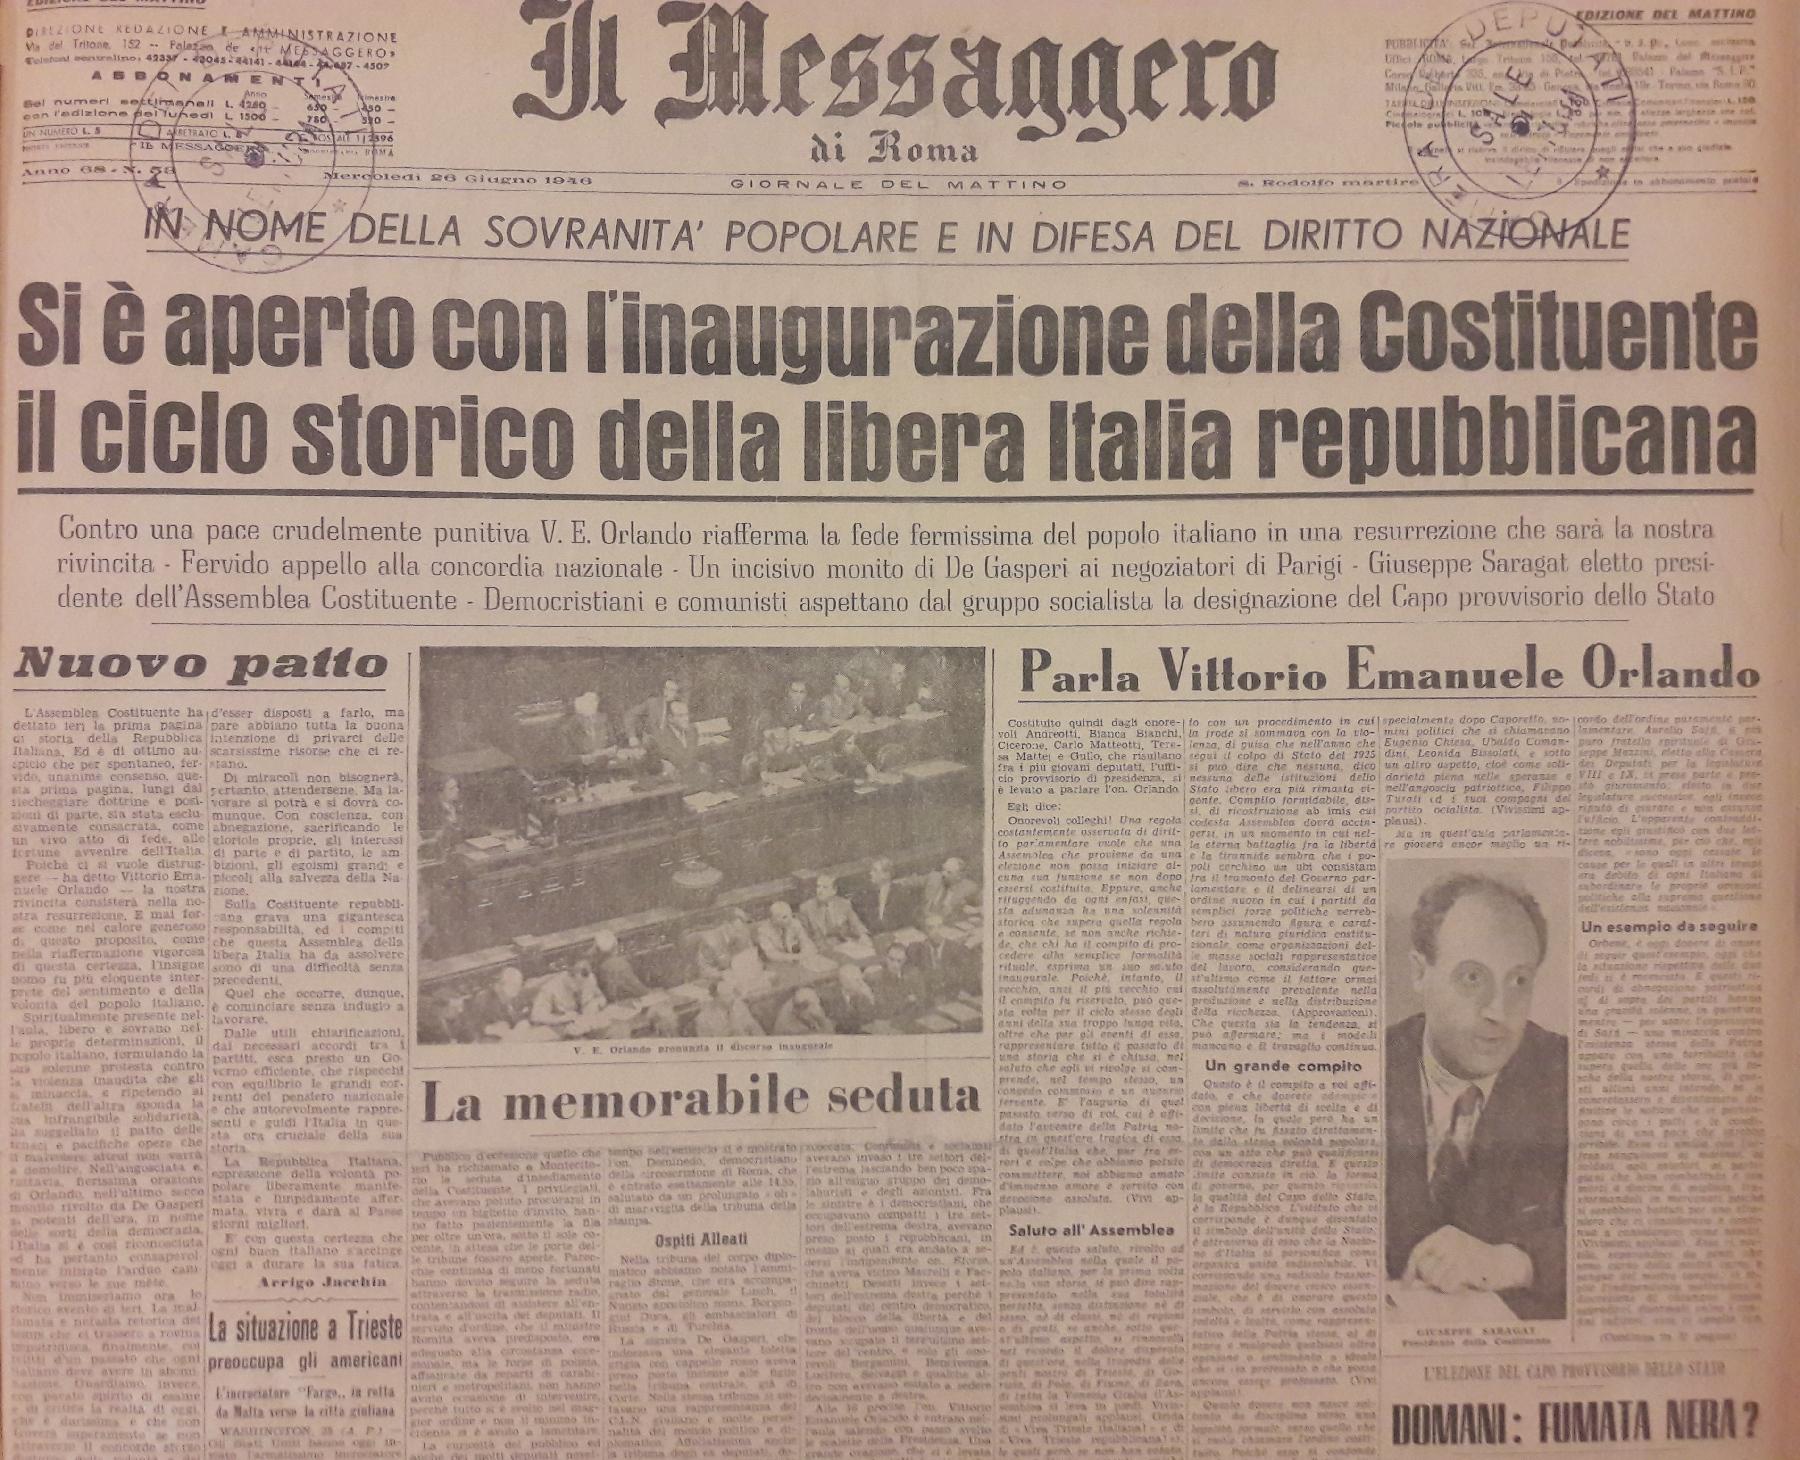 26 giugno 1946 - Prima pagina del quotidiano "Il Messaggero".